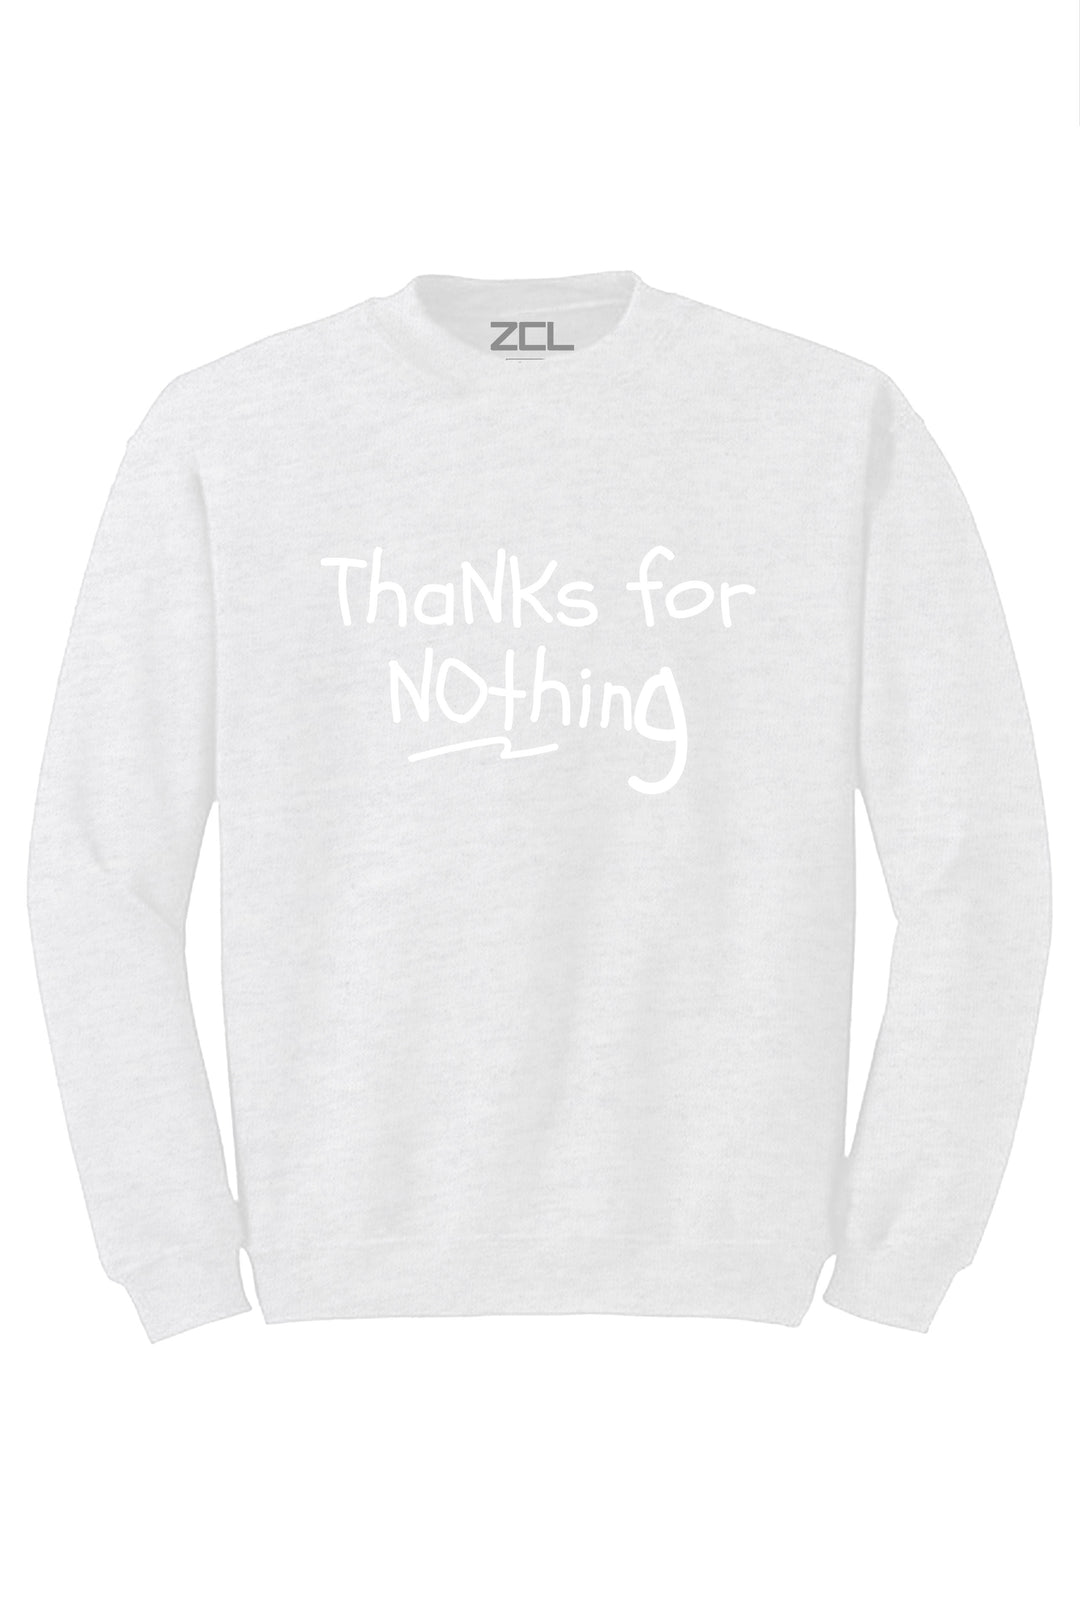 Thanks For Nothing Crewneck Sweatshirt (White Logo) - Zamage